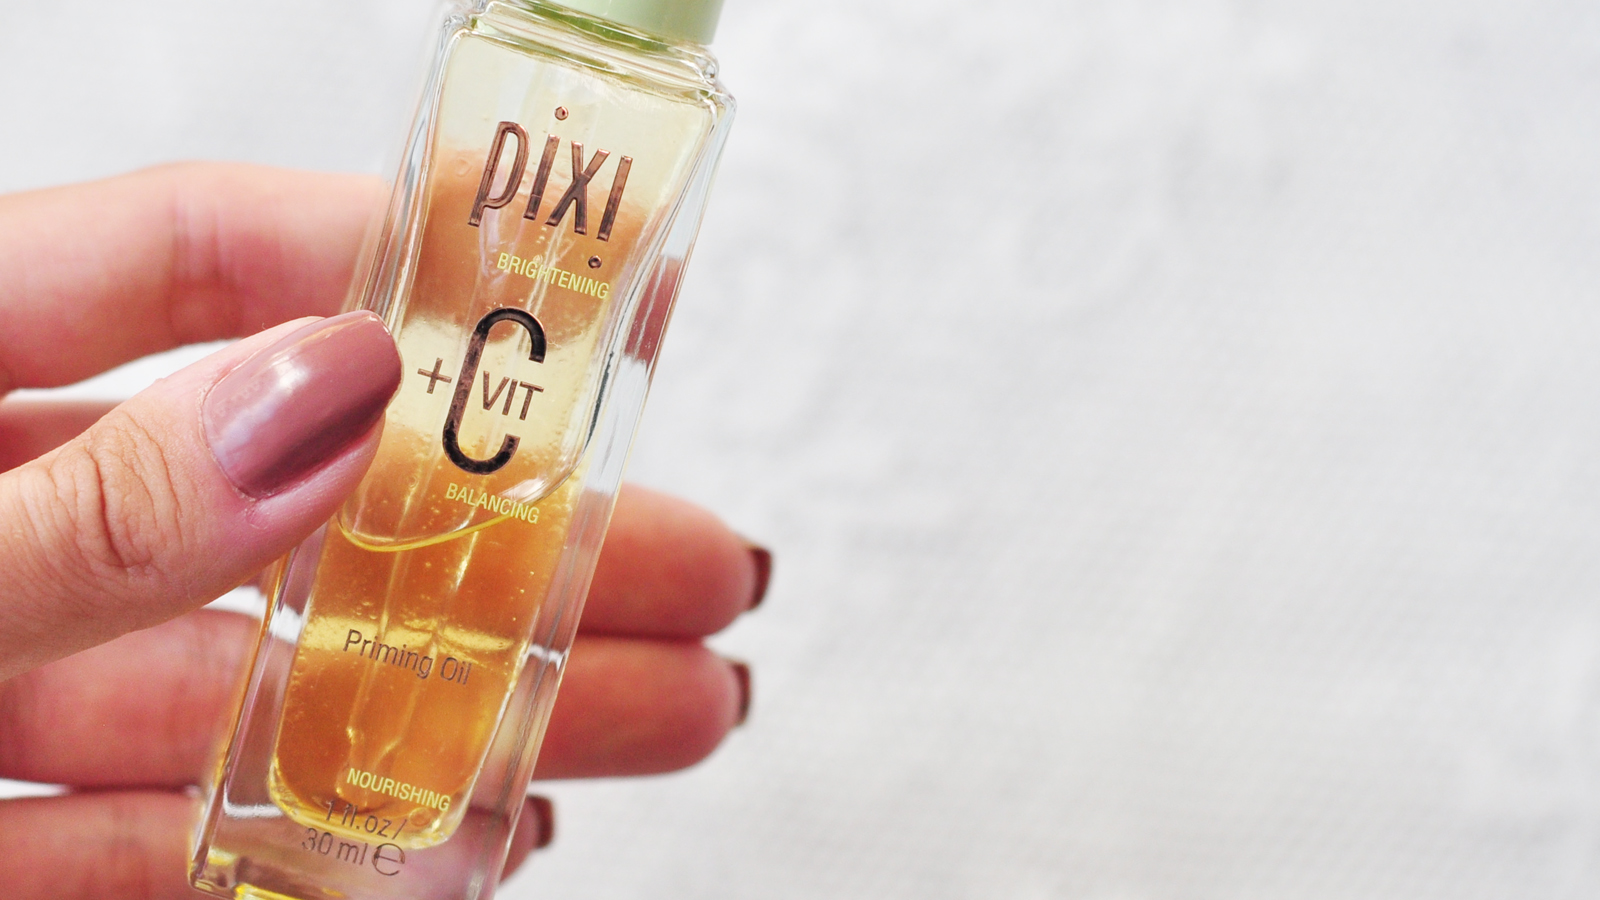 Pixi +C VIT Priming Oil